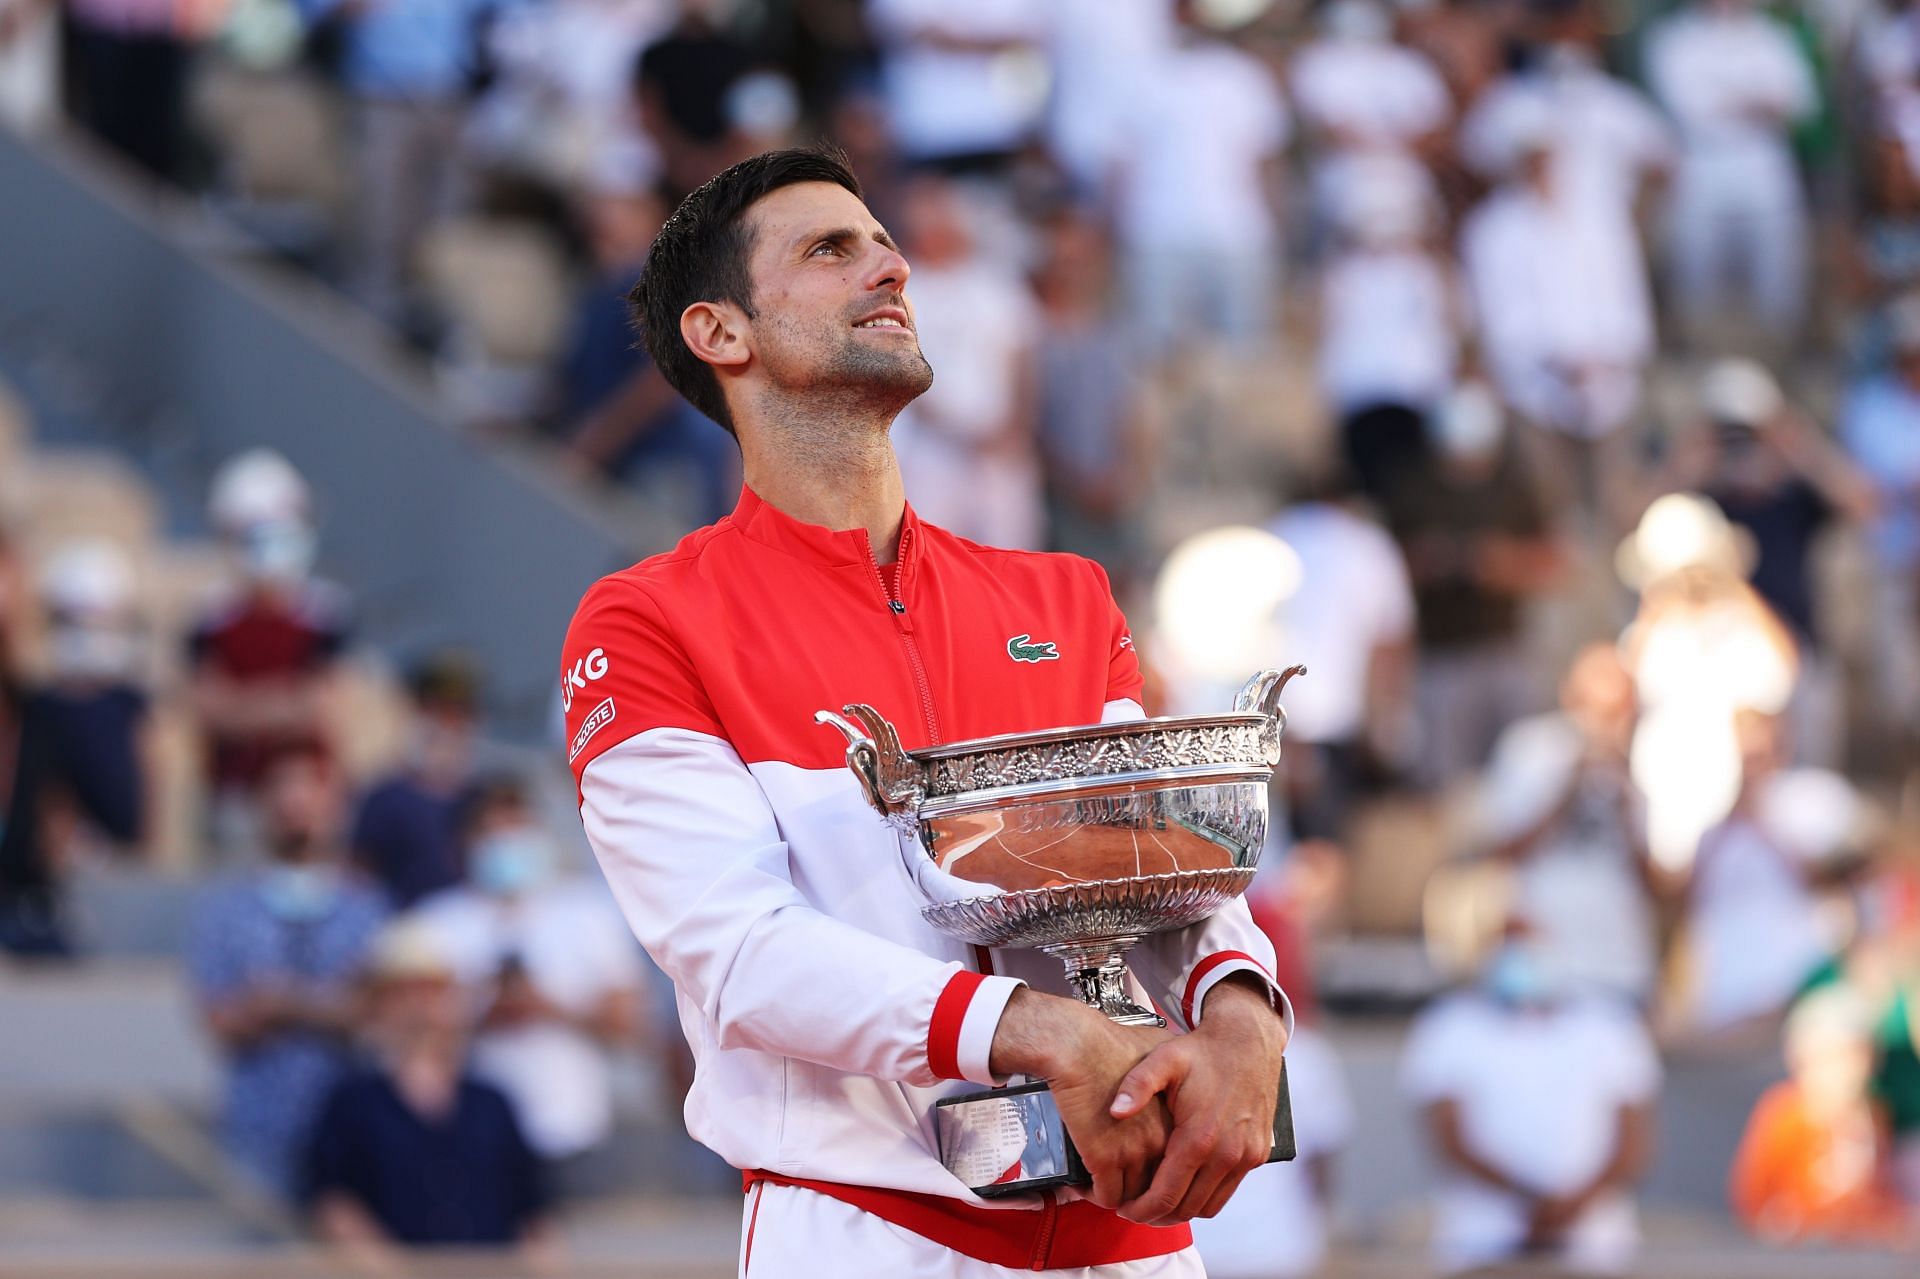 Novak Djokovic with the 2021 Roland Garros trophy